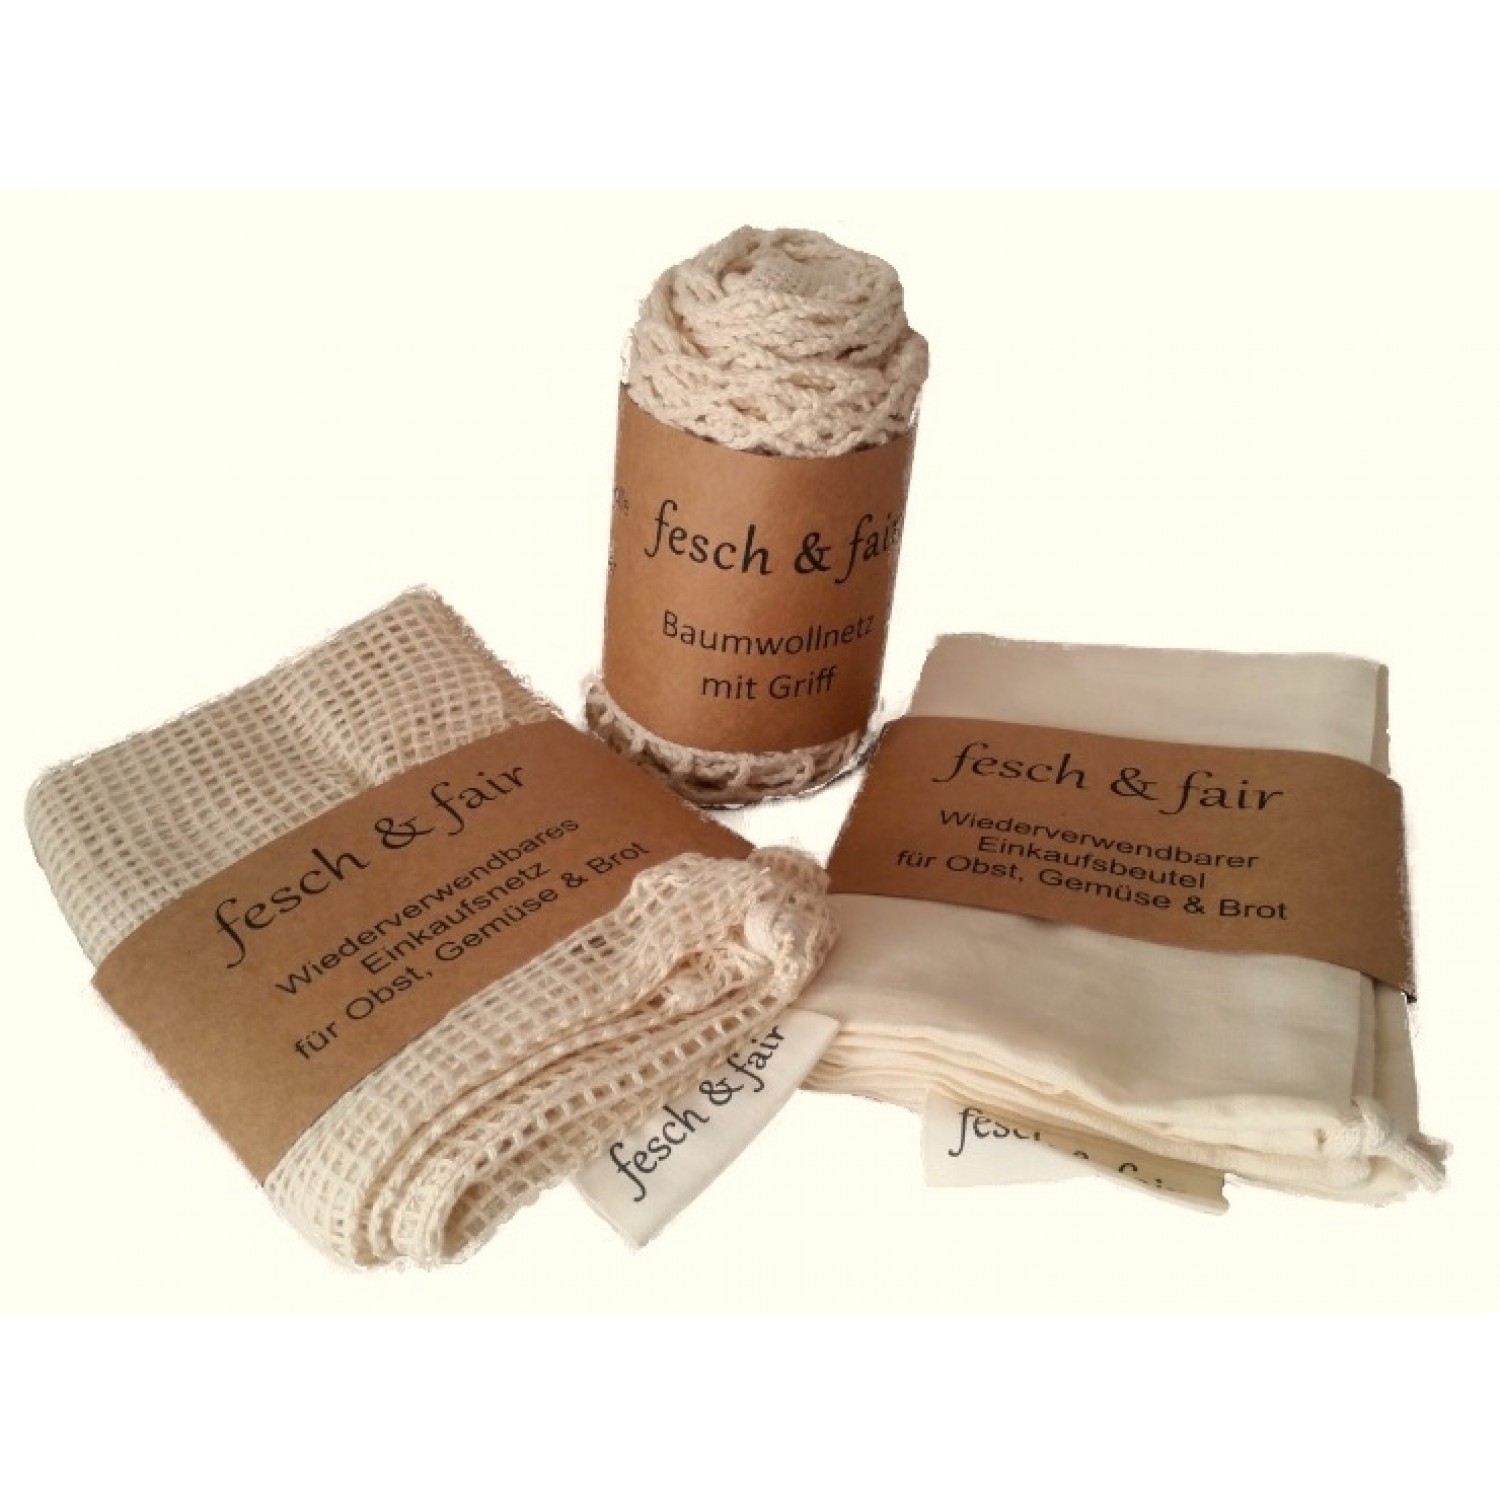 3-piece reusable Organic Cotton Shopping Bag Set - fesch & fair